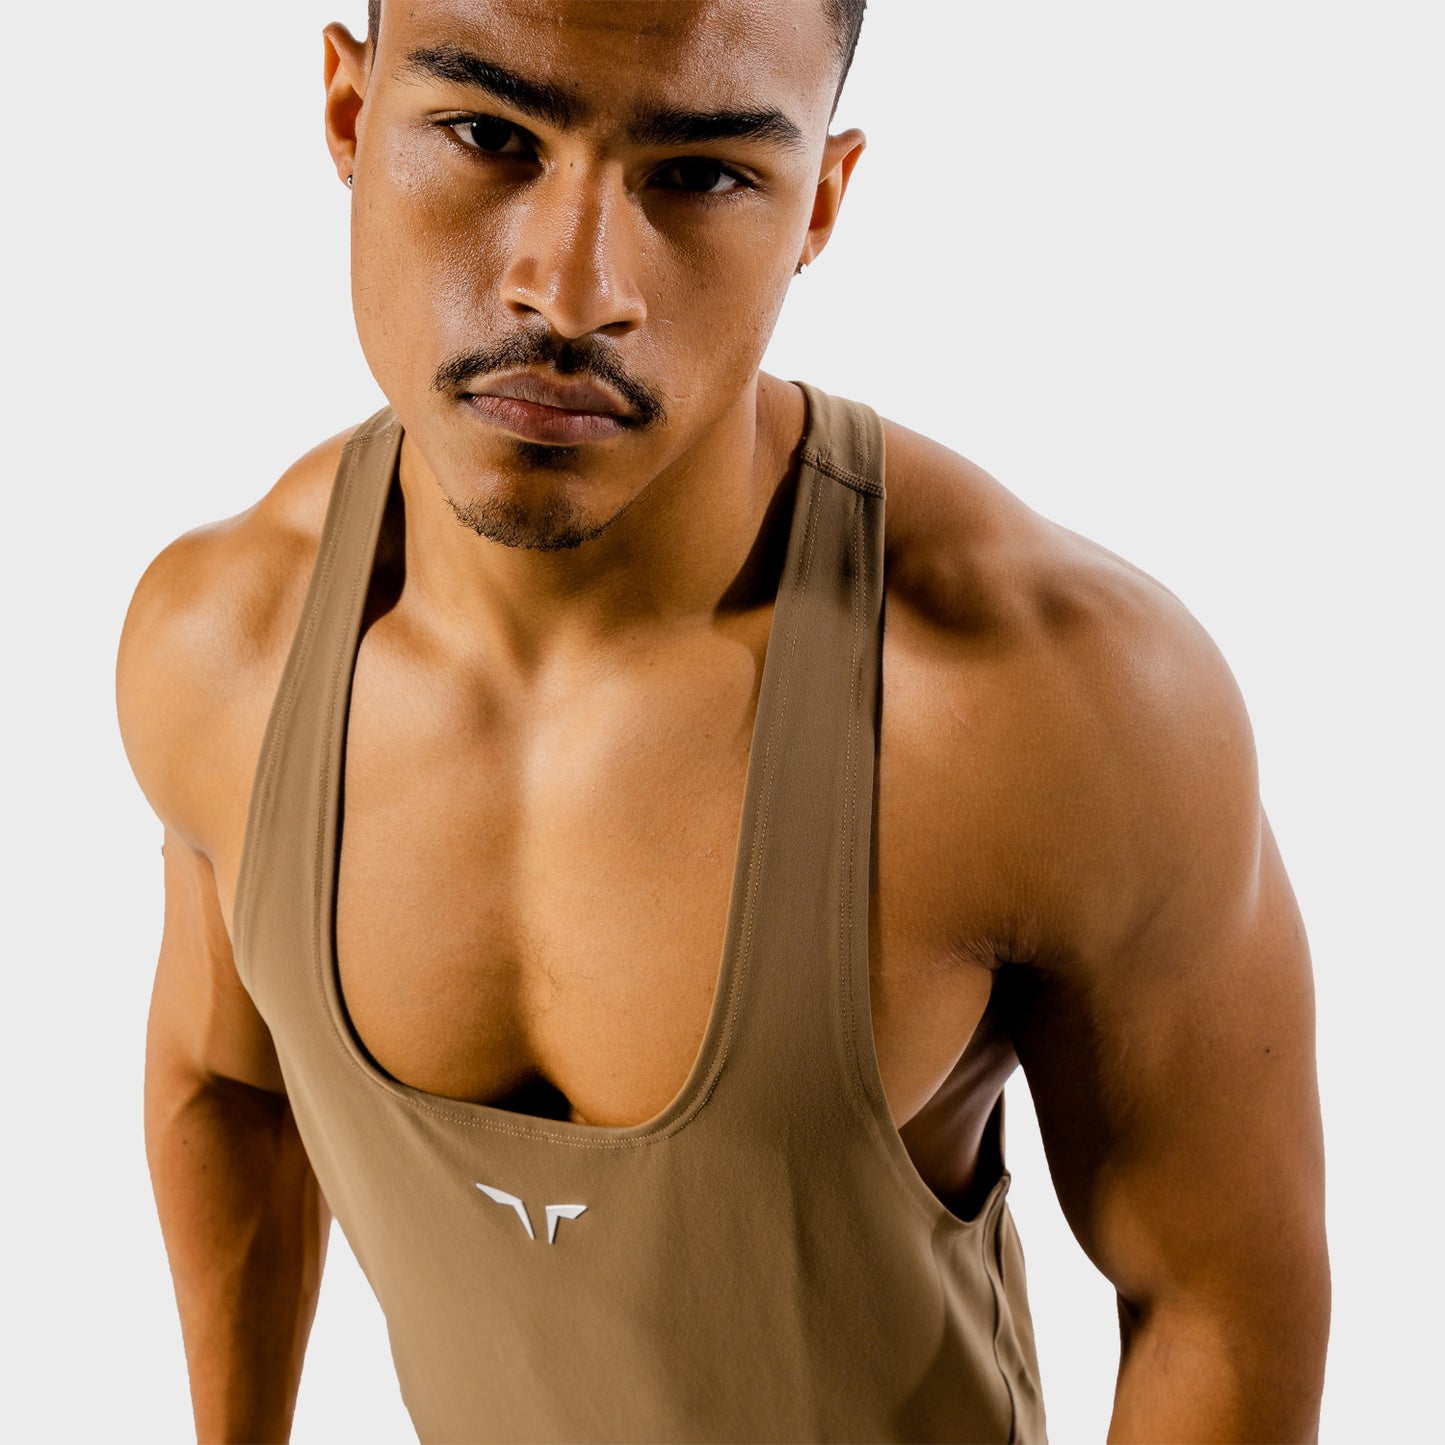 squatwolf-gym-wear-next-gen-stringer-brown-workout-stringers-vests-for-men